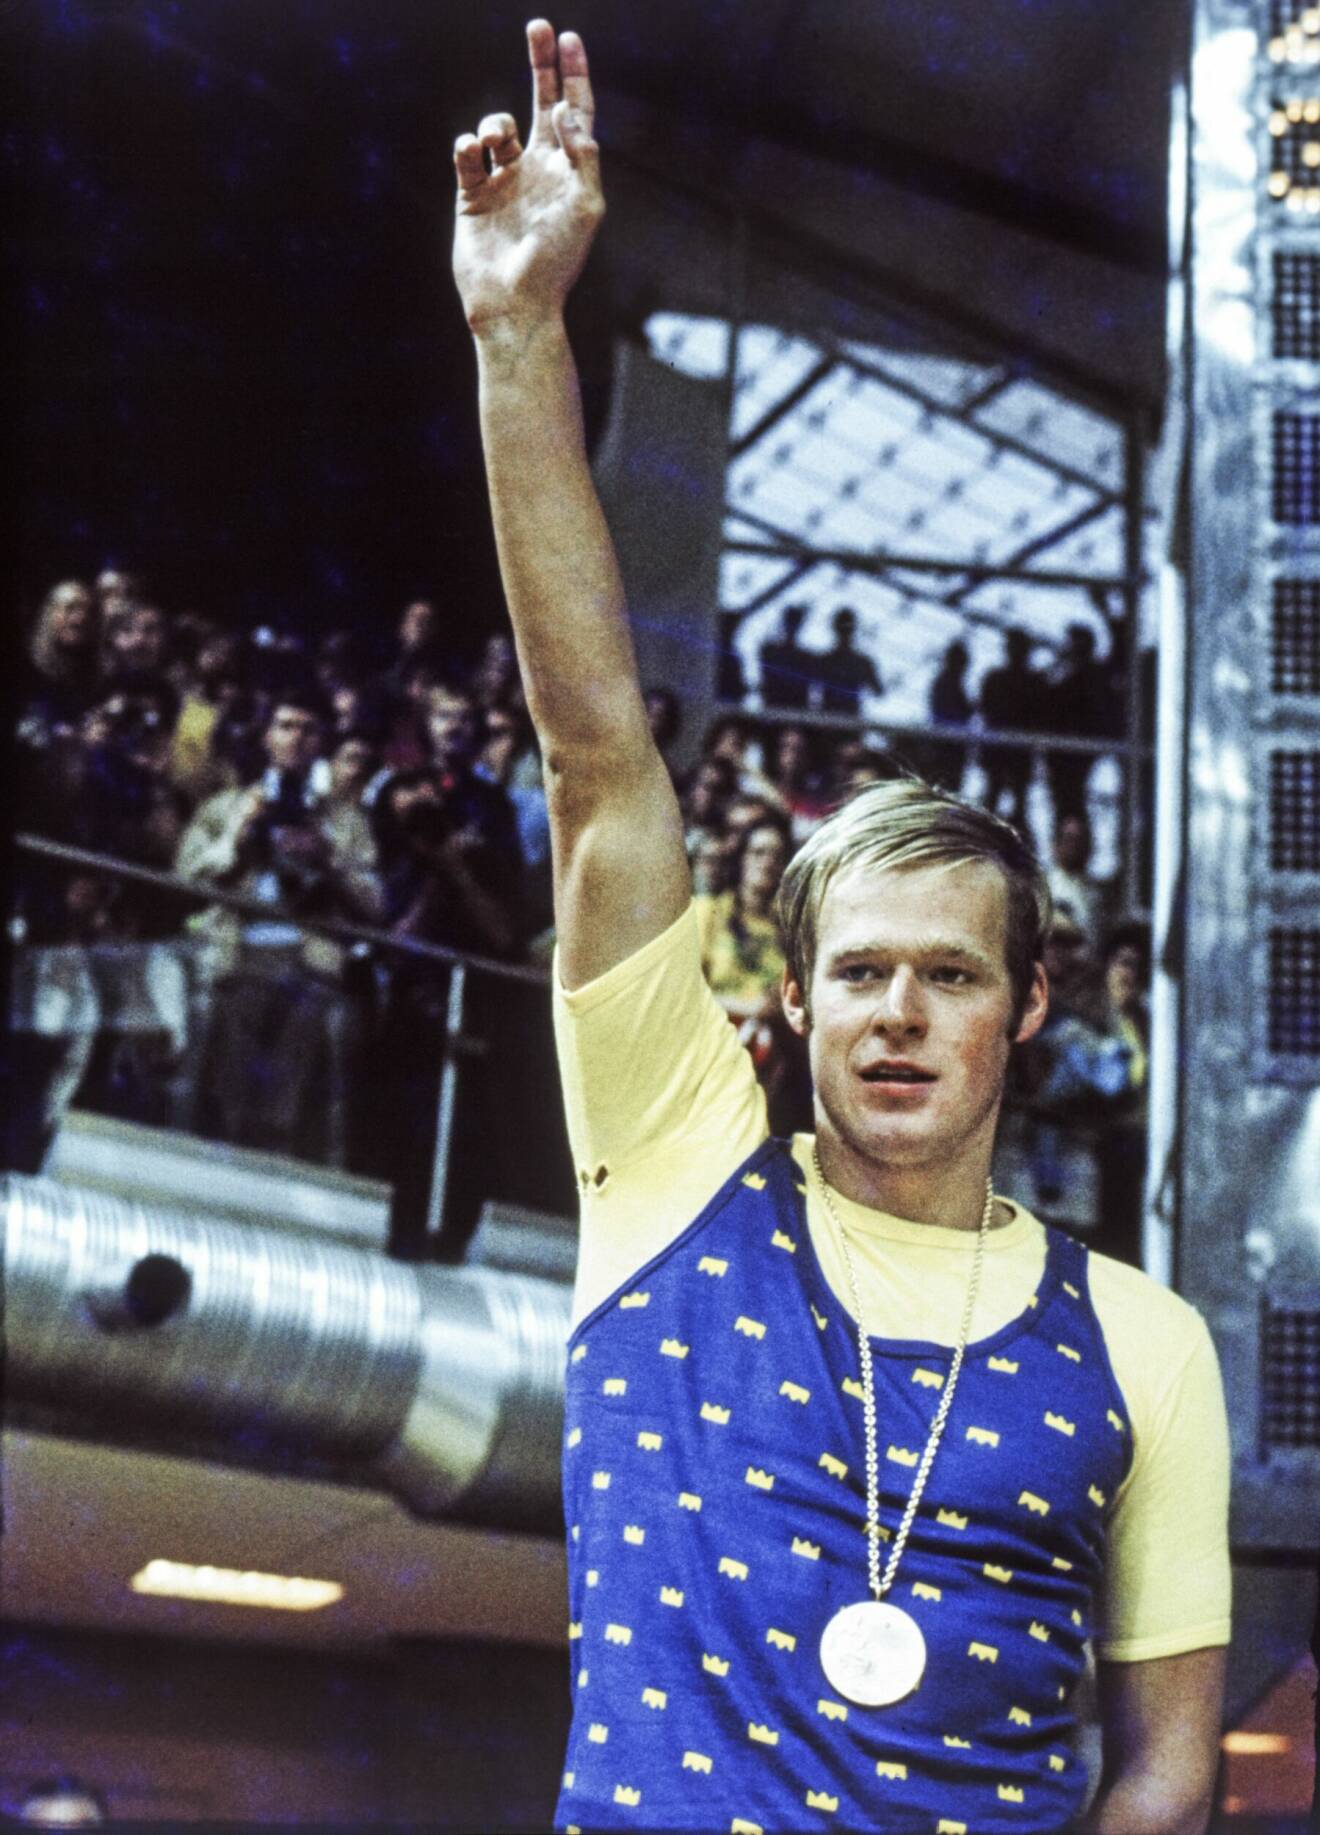 Gunnar Larsson med guldmedalj om halsen höjer armen i en gest mot publiken.